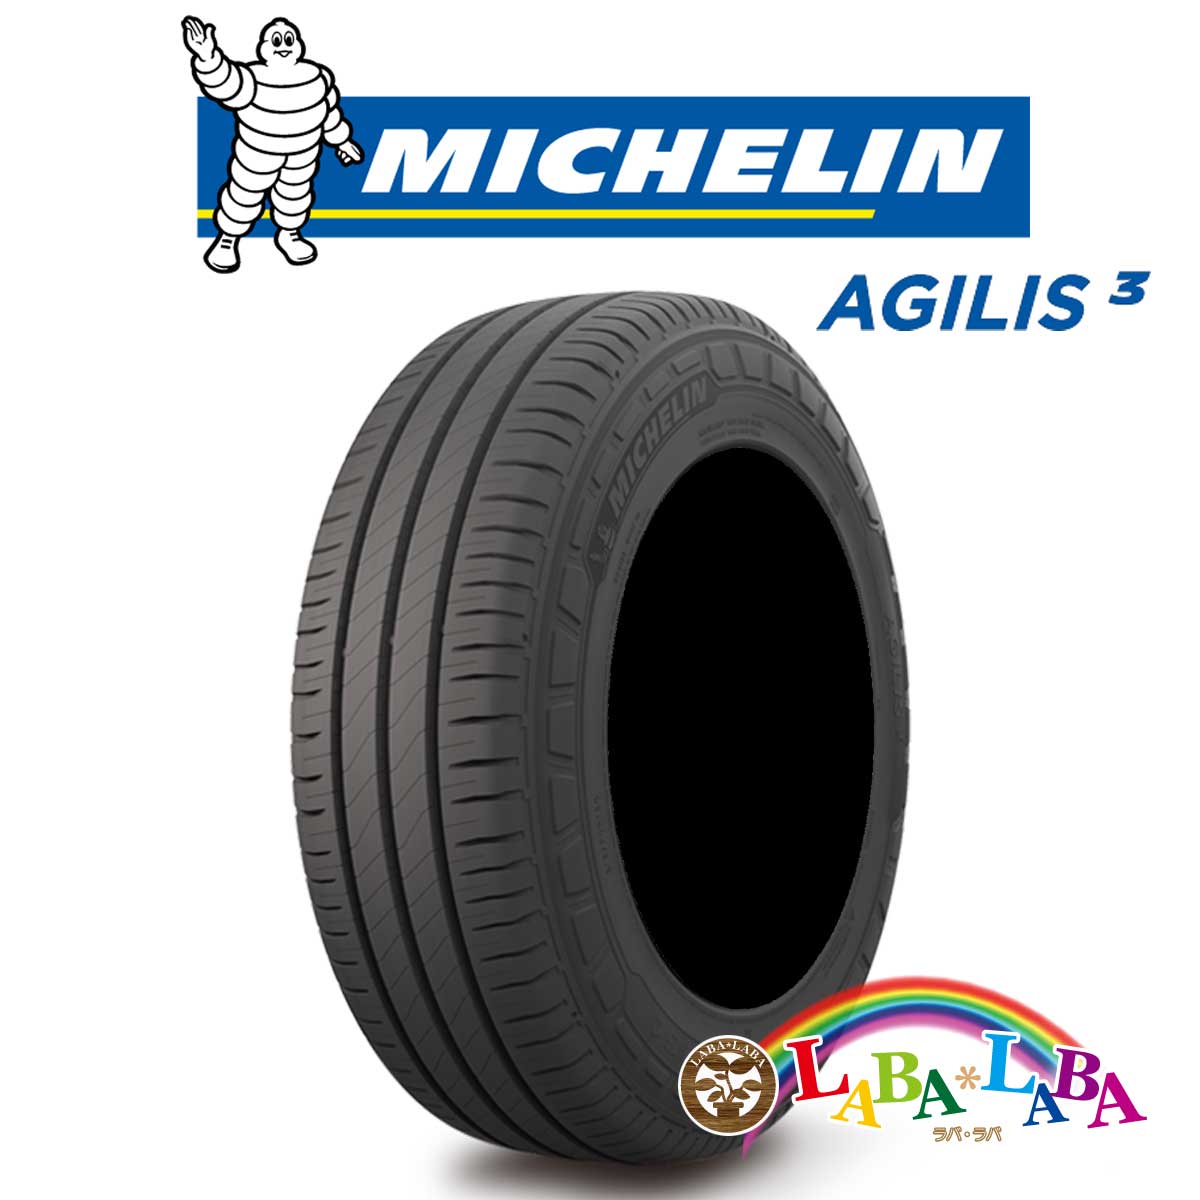 MICHELIN ミシュラン アジリス AGILIS3 195/80R15 108/106S サマータイヤ 2本セット